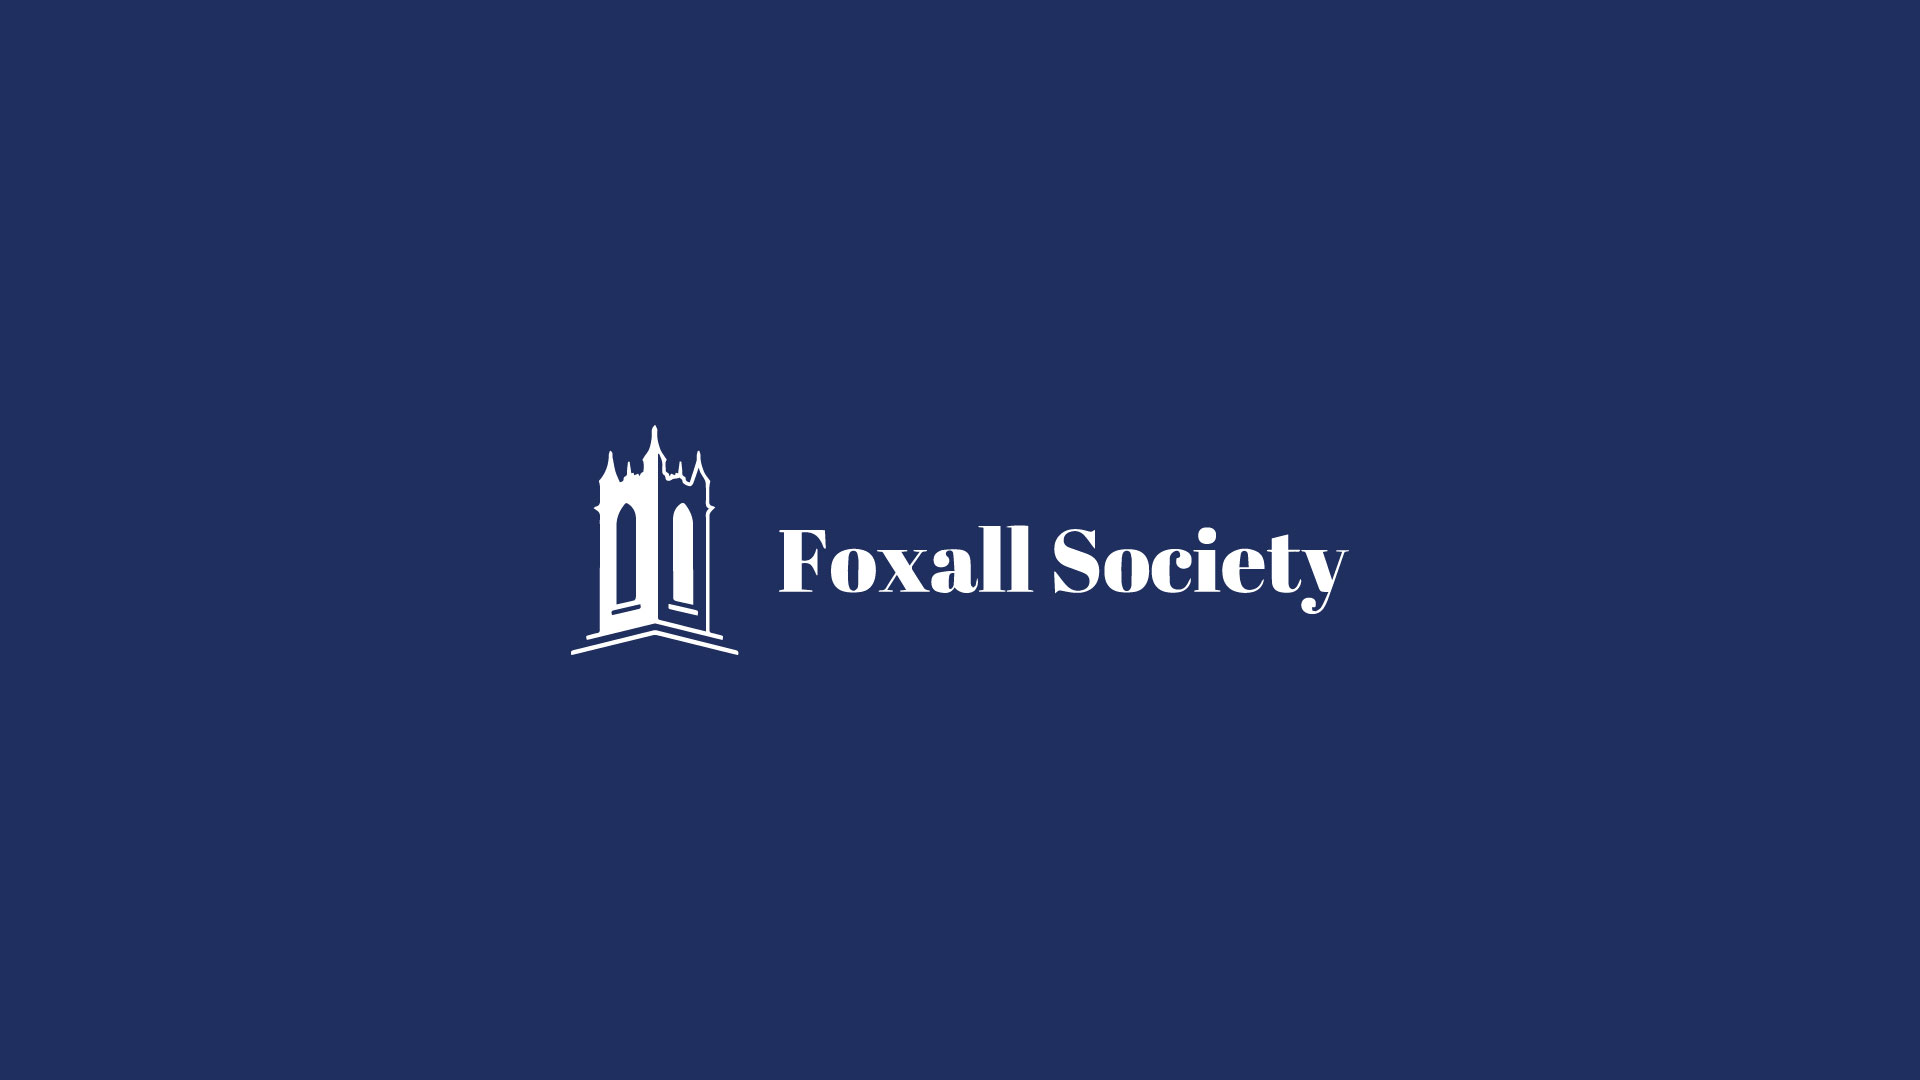 Foxall Society Estate Planning Webinar